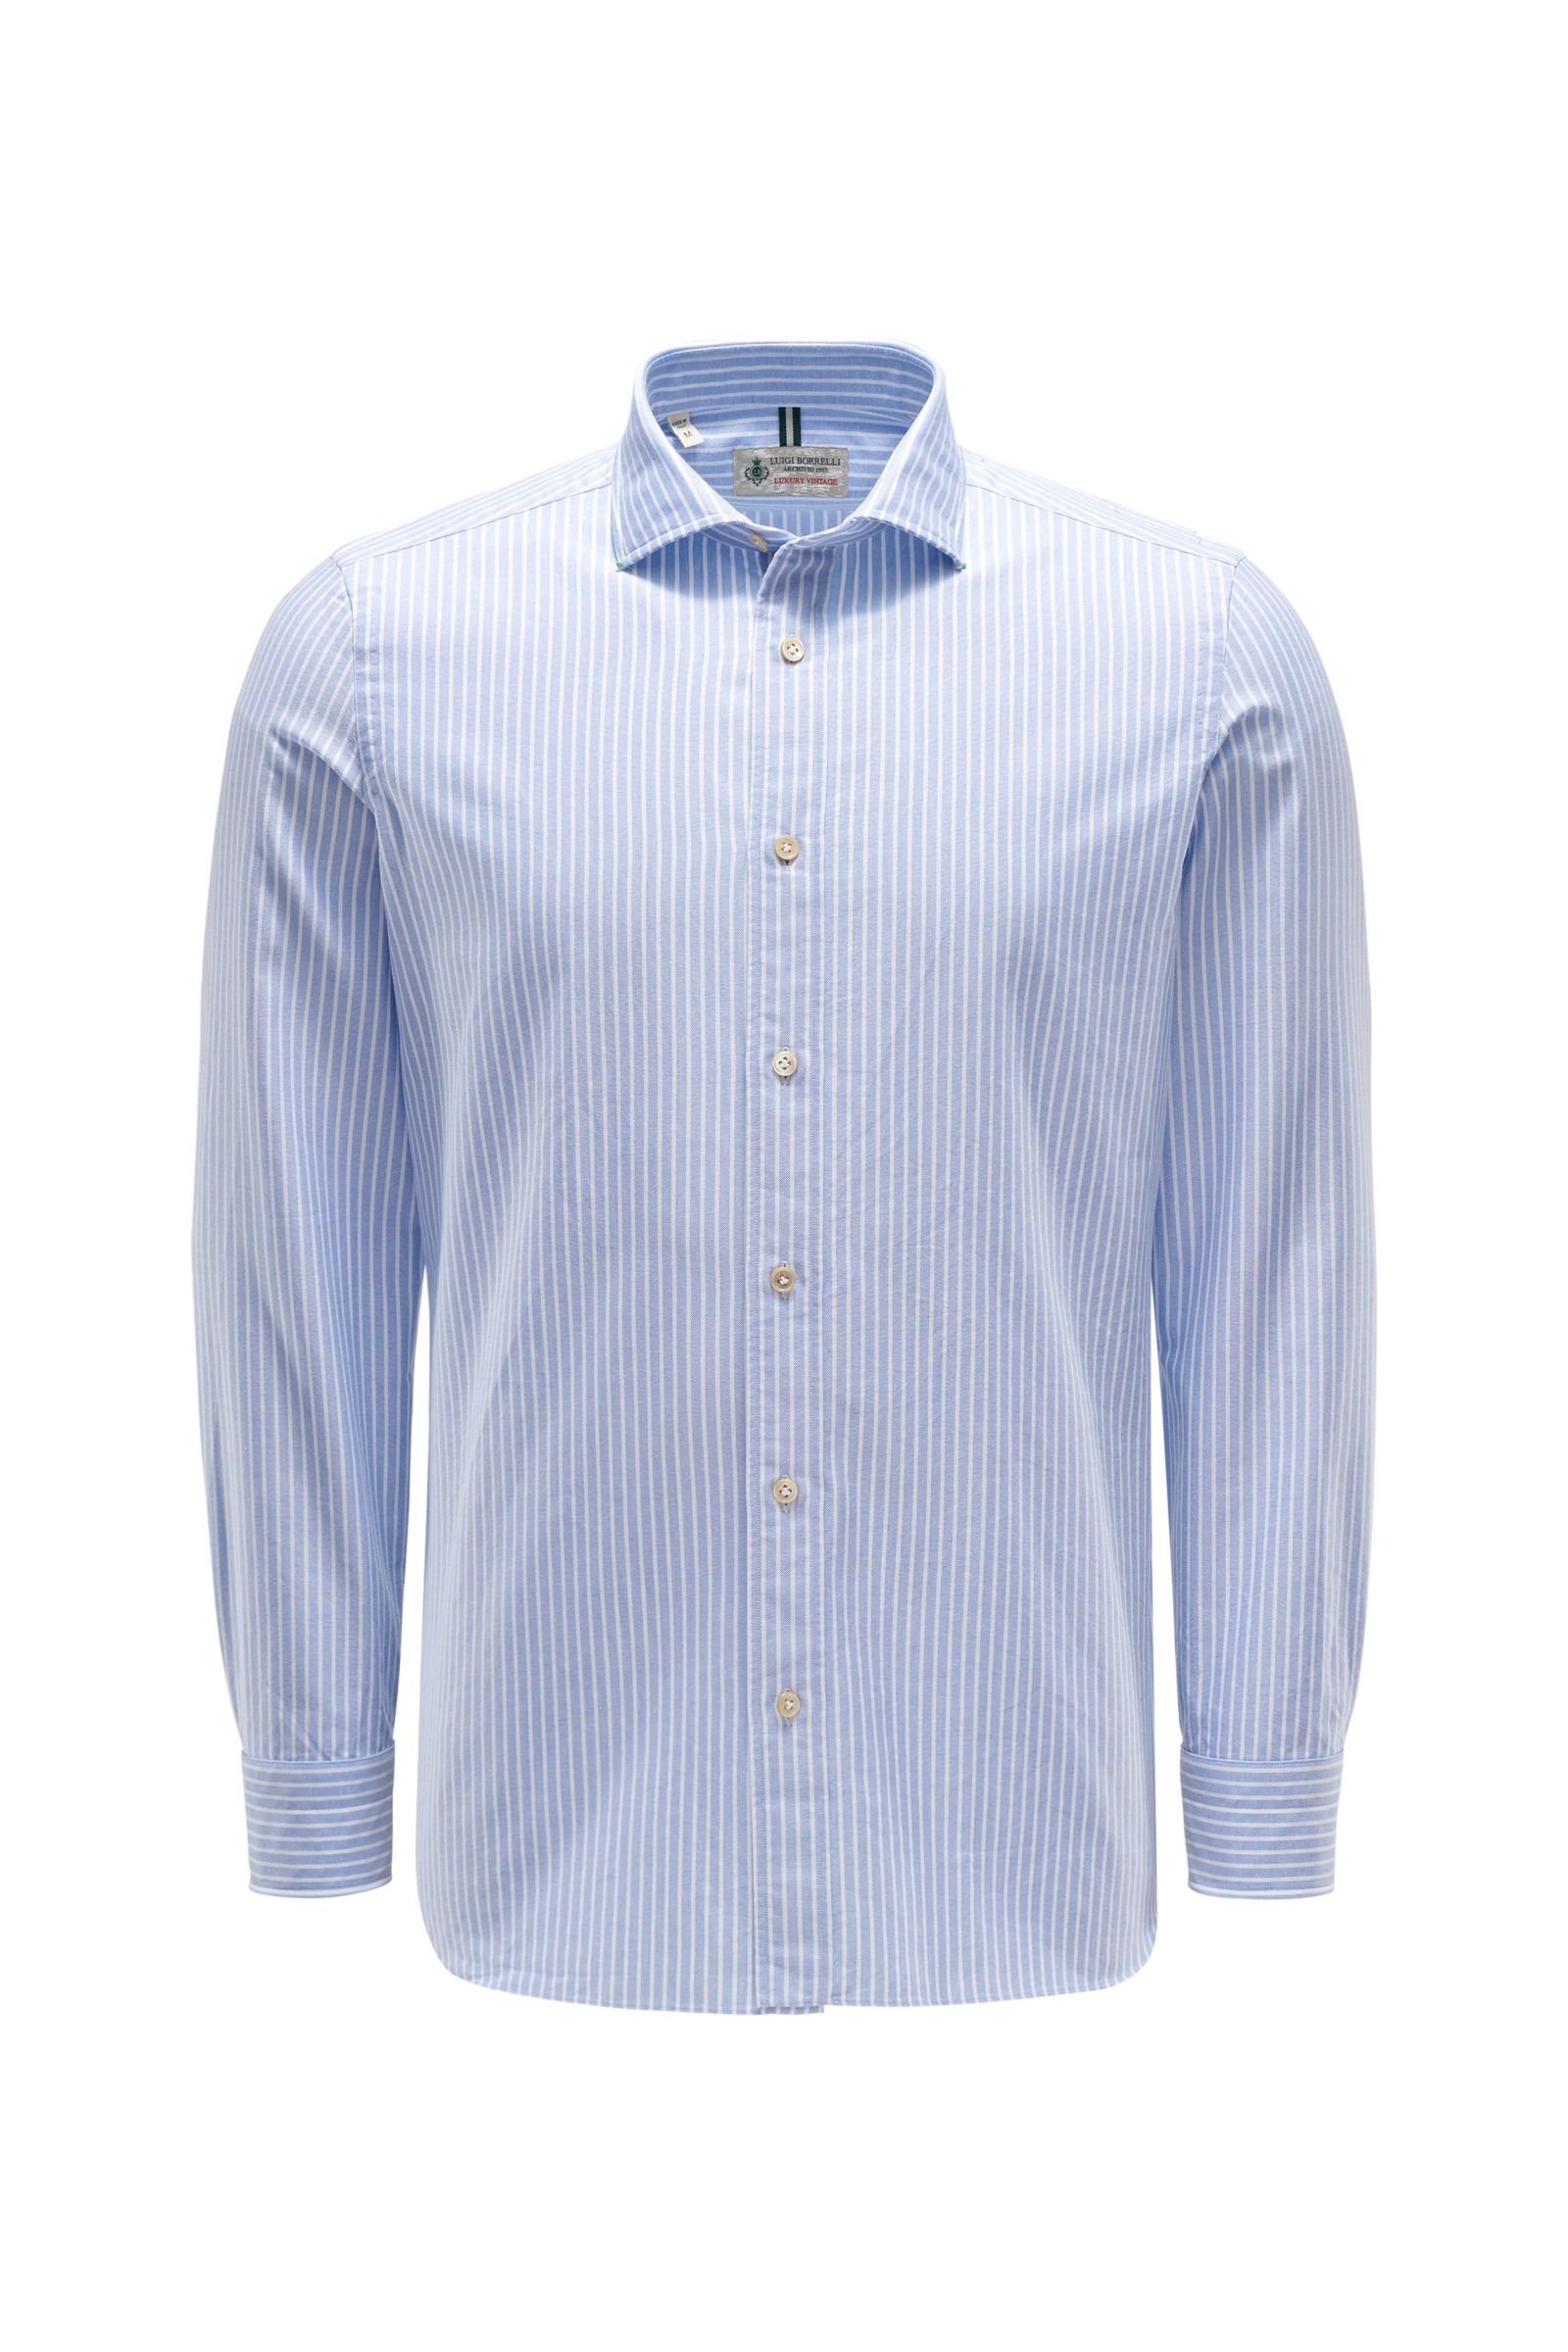 Oxfordhemd schmaler Kragen hellblau/weiß gestreift